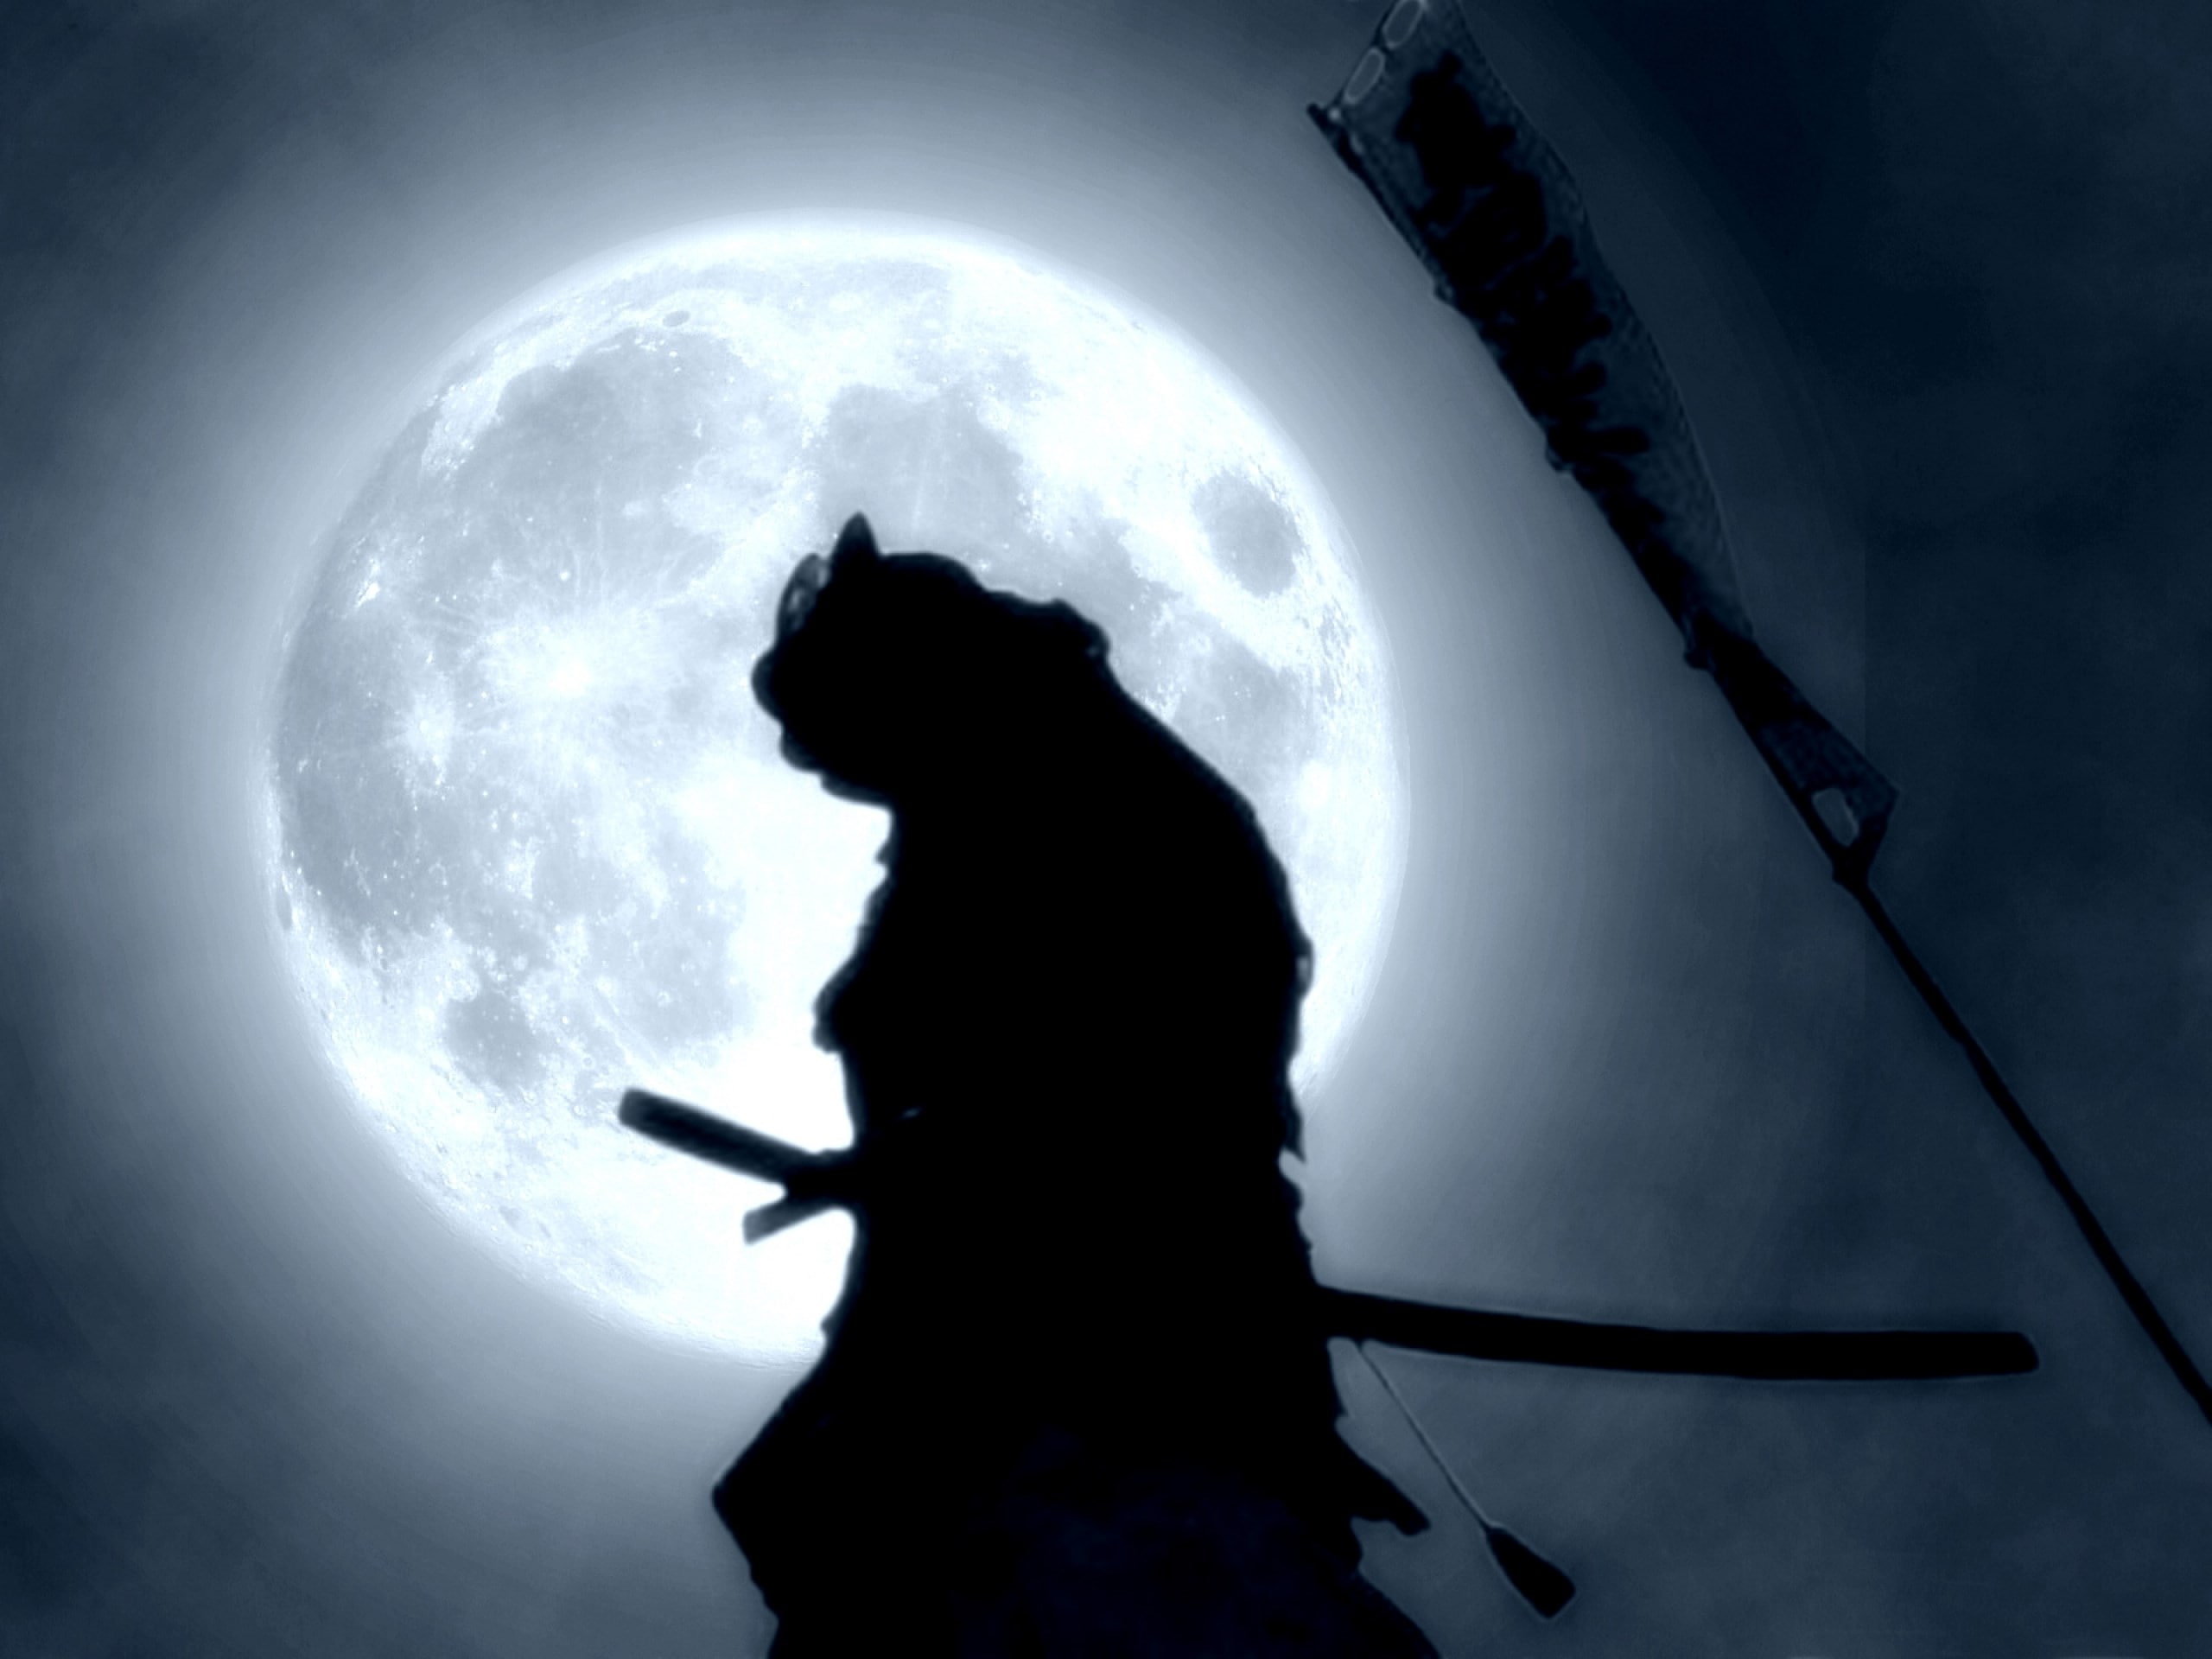 samurai, silhouette, sky, one person, moon, three quarter length